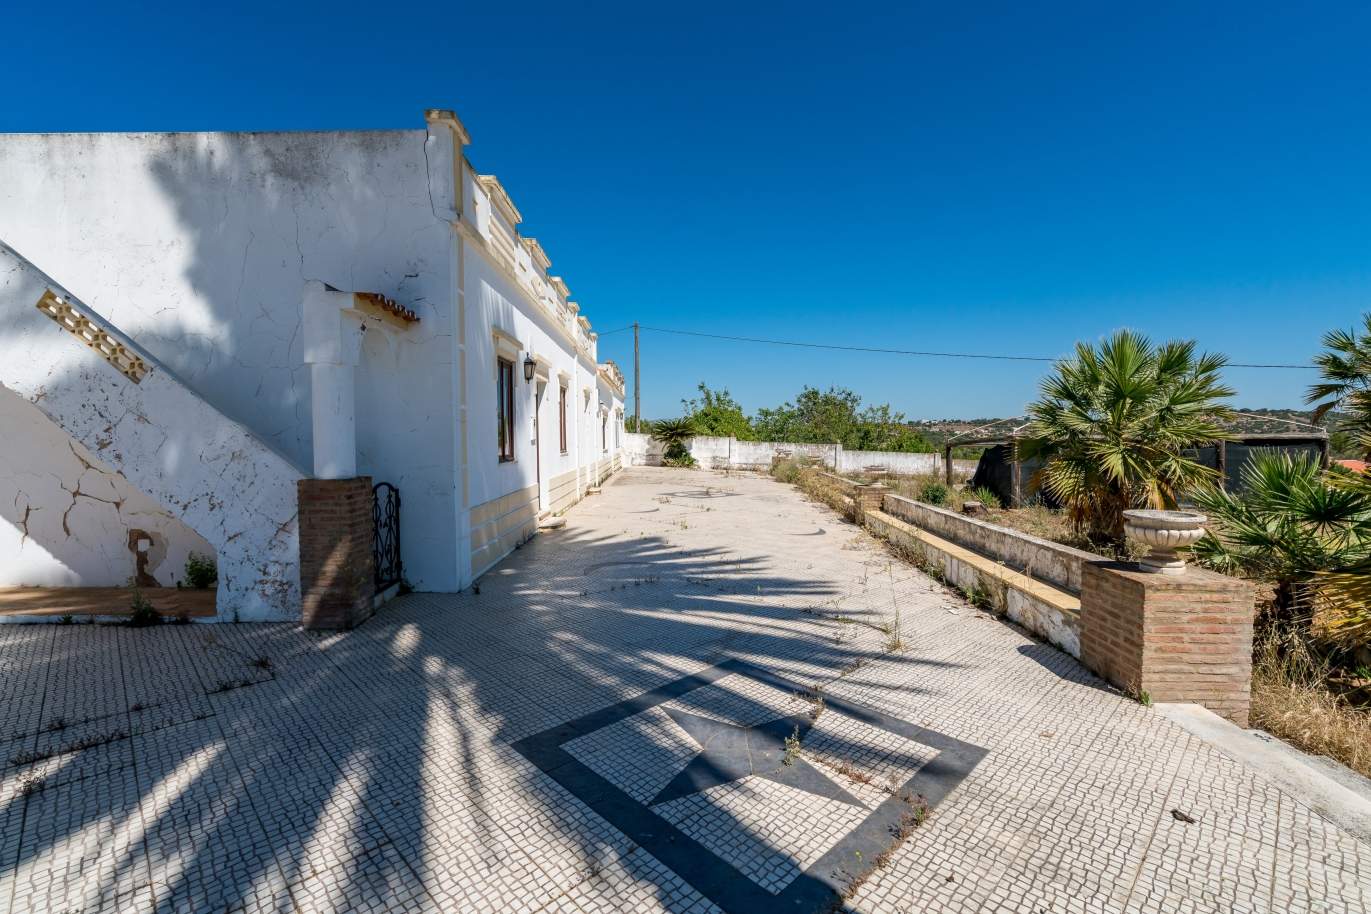 Venta de inmueble en Alcantarilha, Silves, Algarve, Portugal_105713